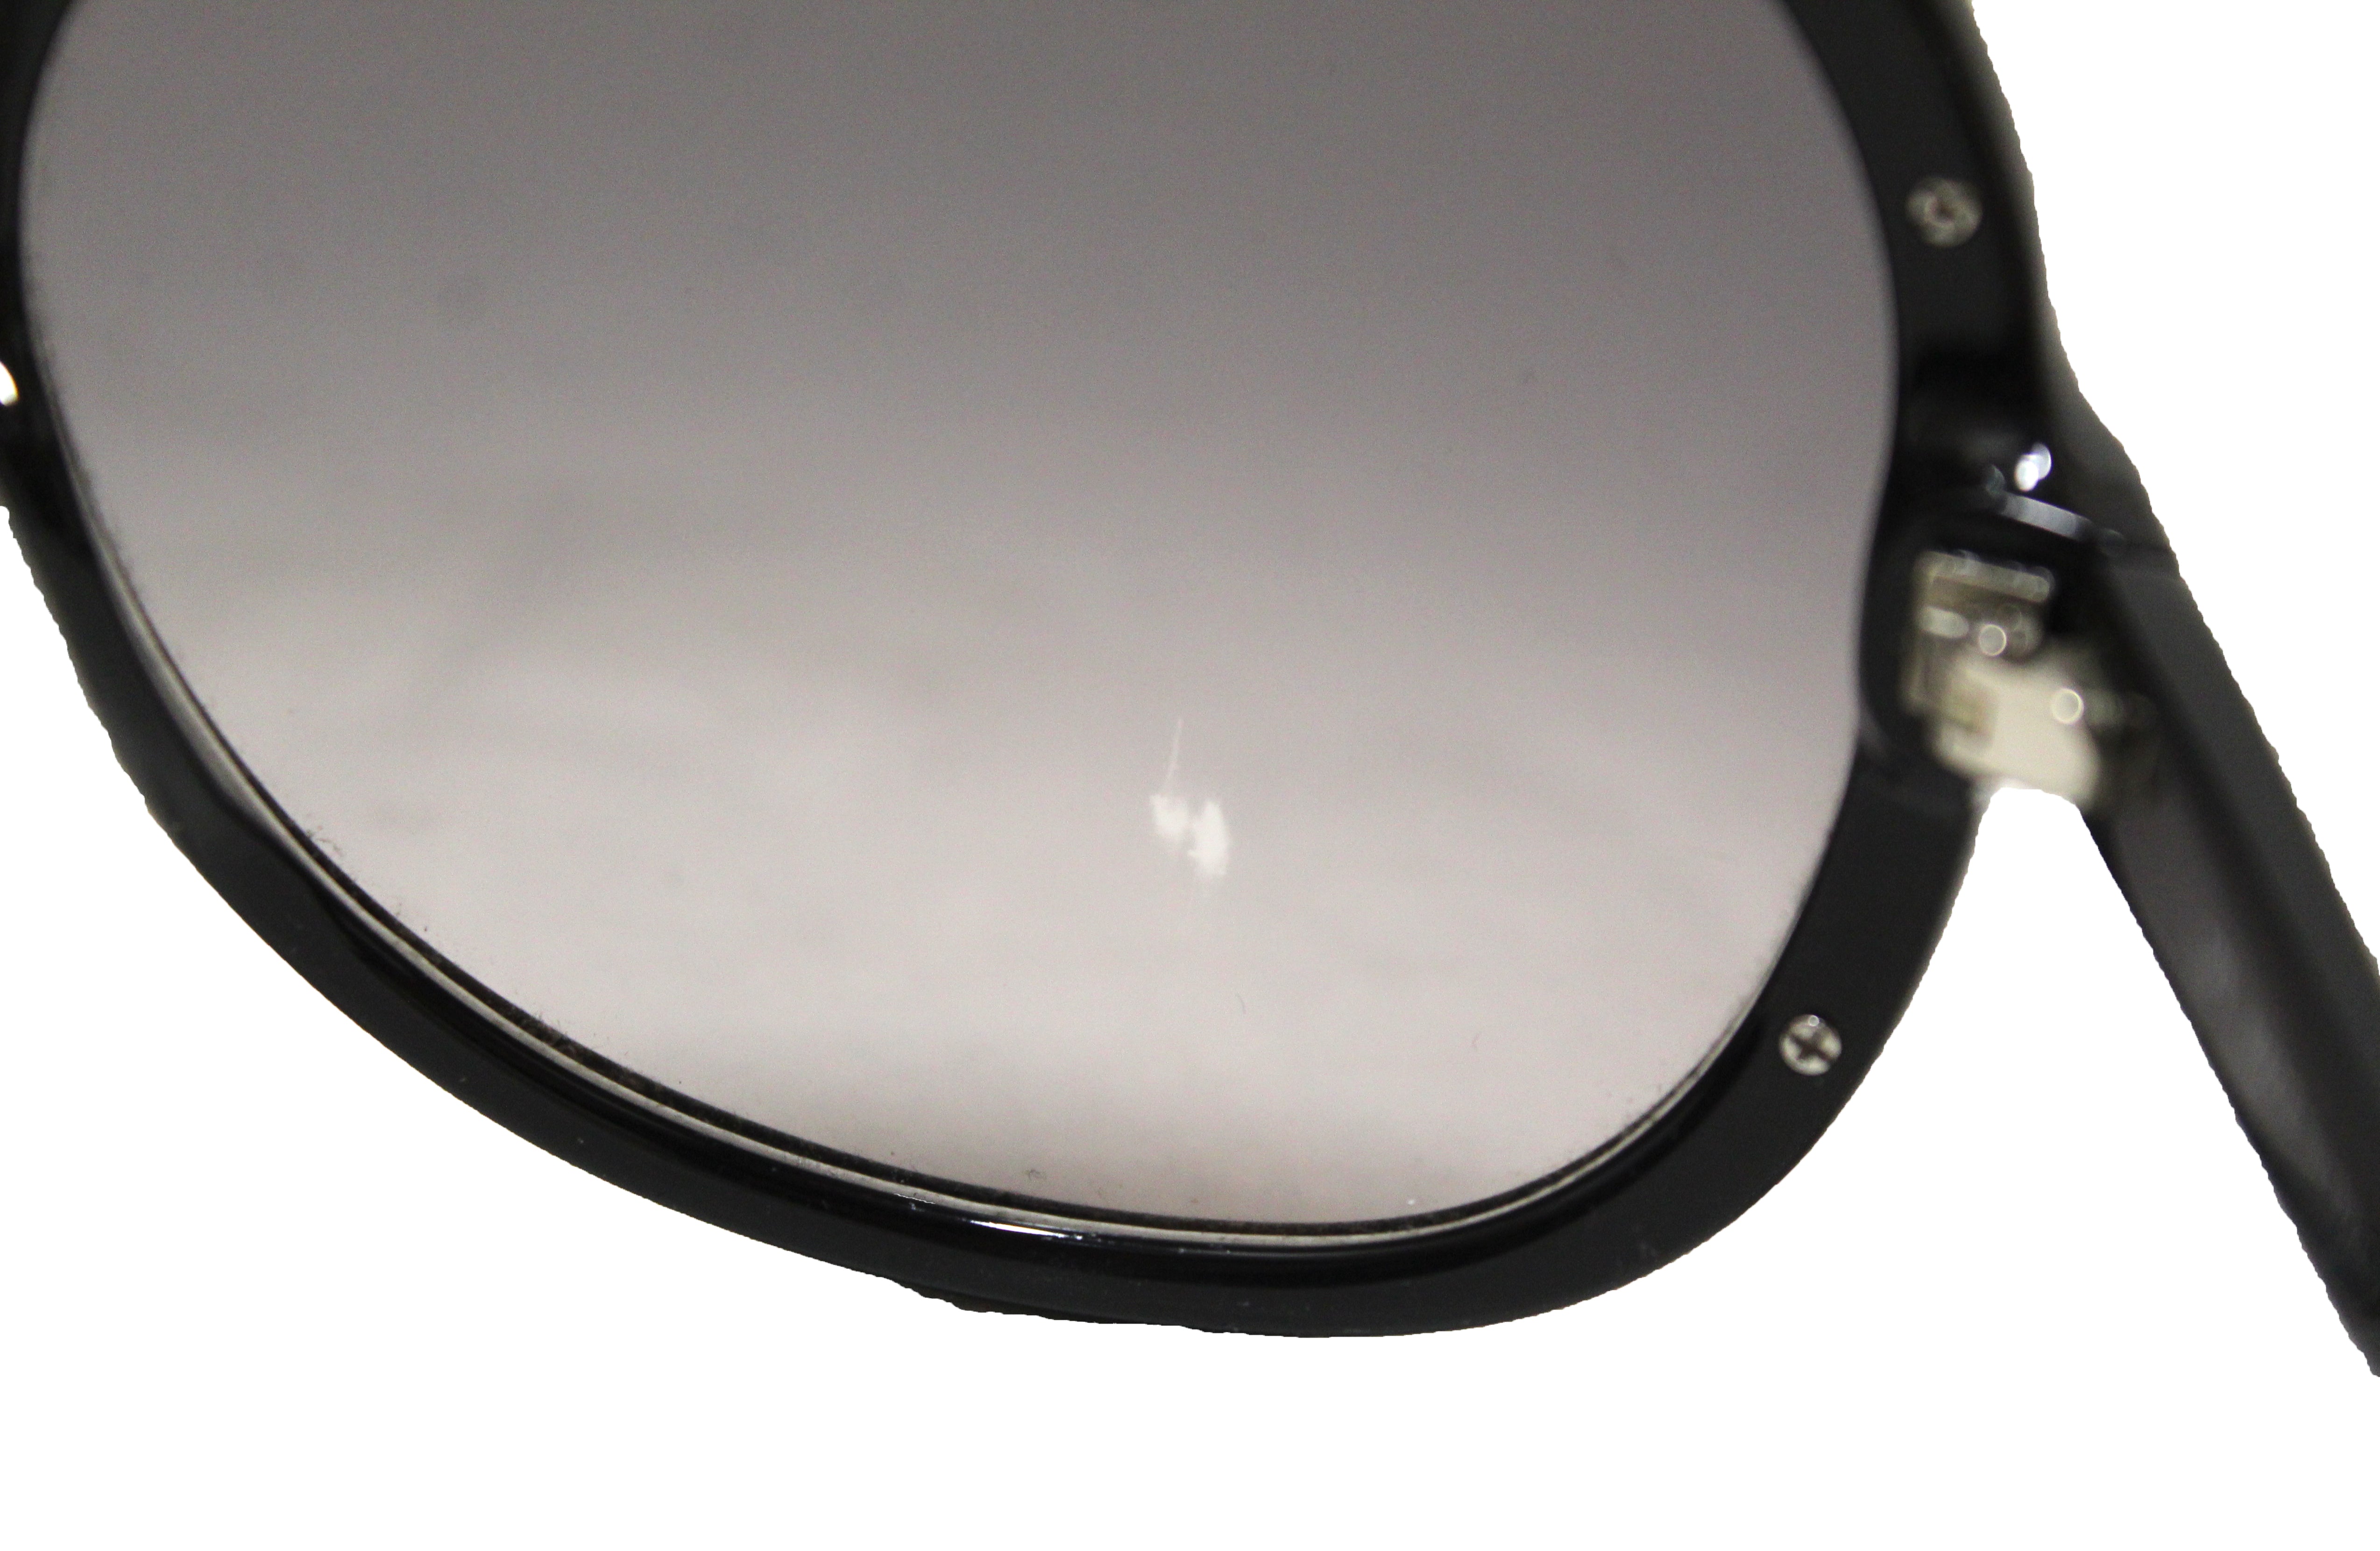 Authentic Fendi Black Acetate Frame Sunglasses